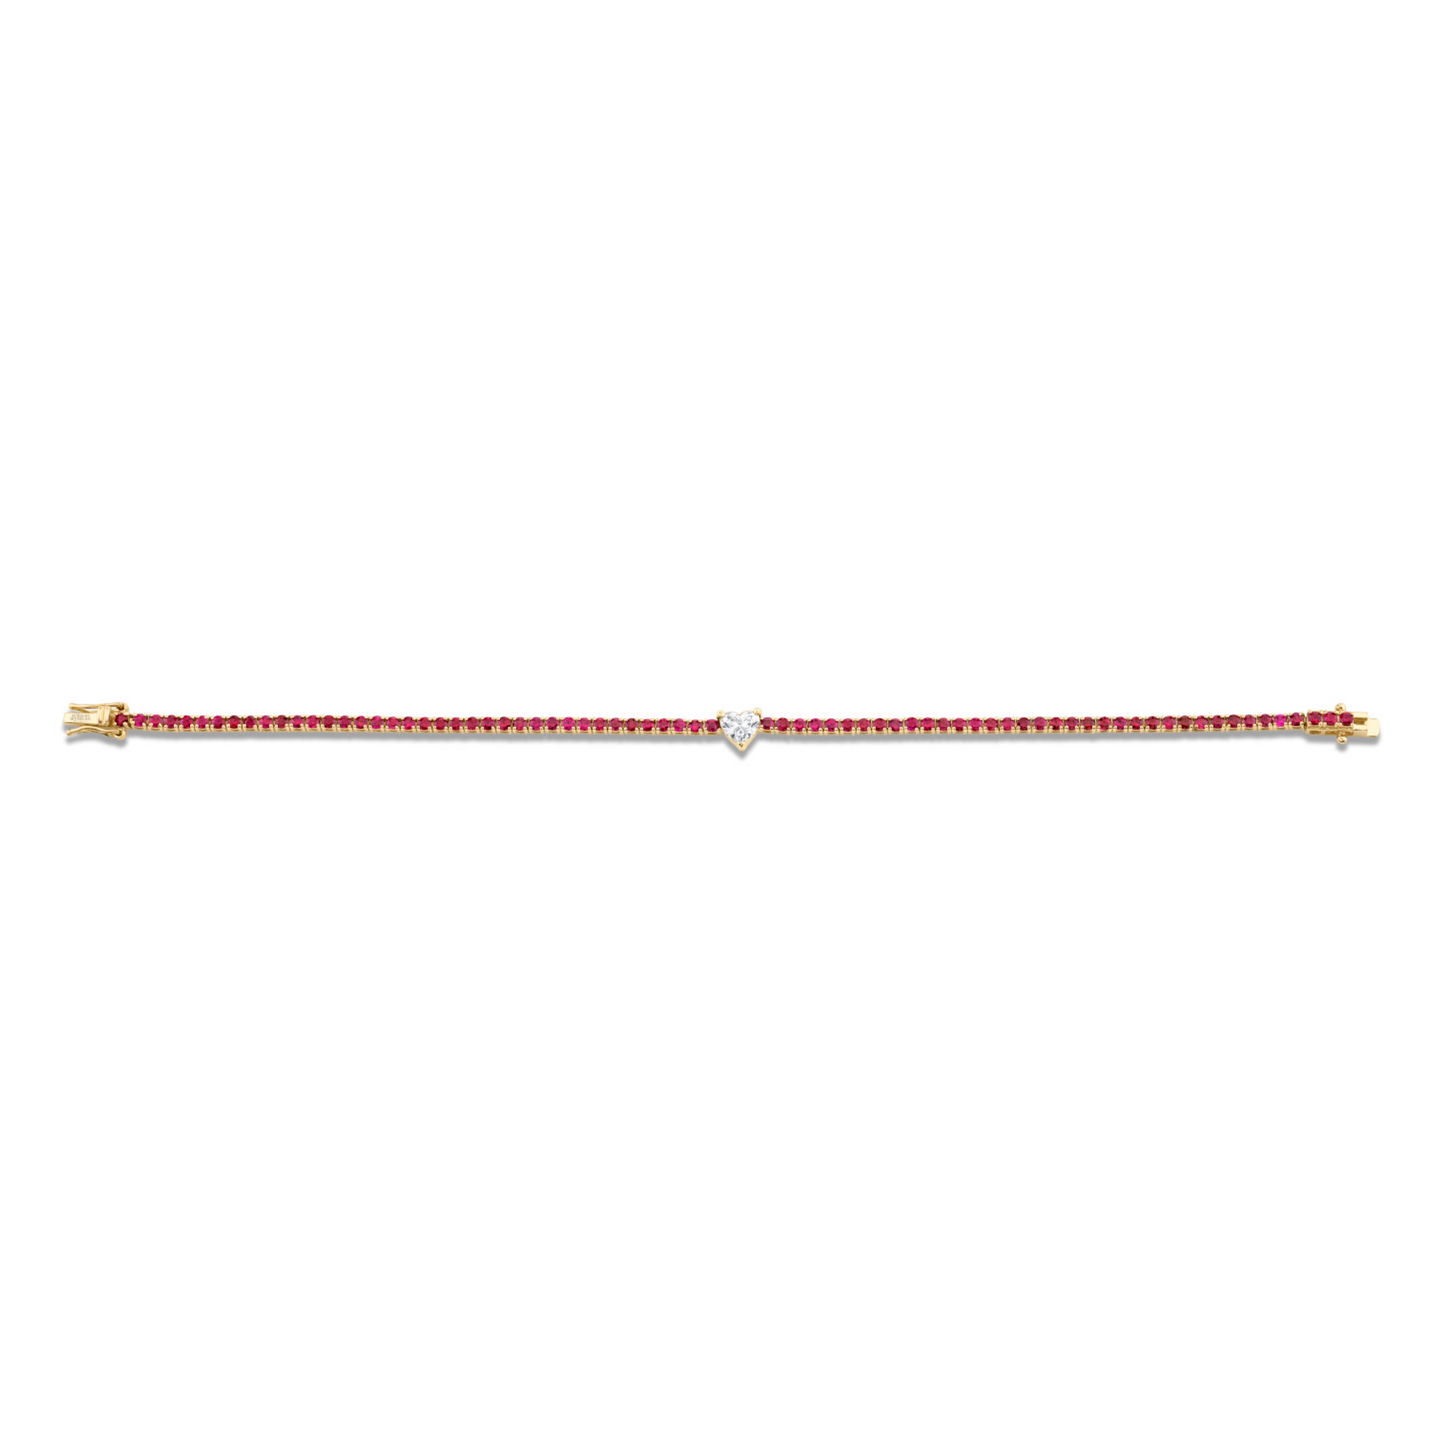 3.27 Carat 14k Rose Gold Straight Line Bracelet